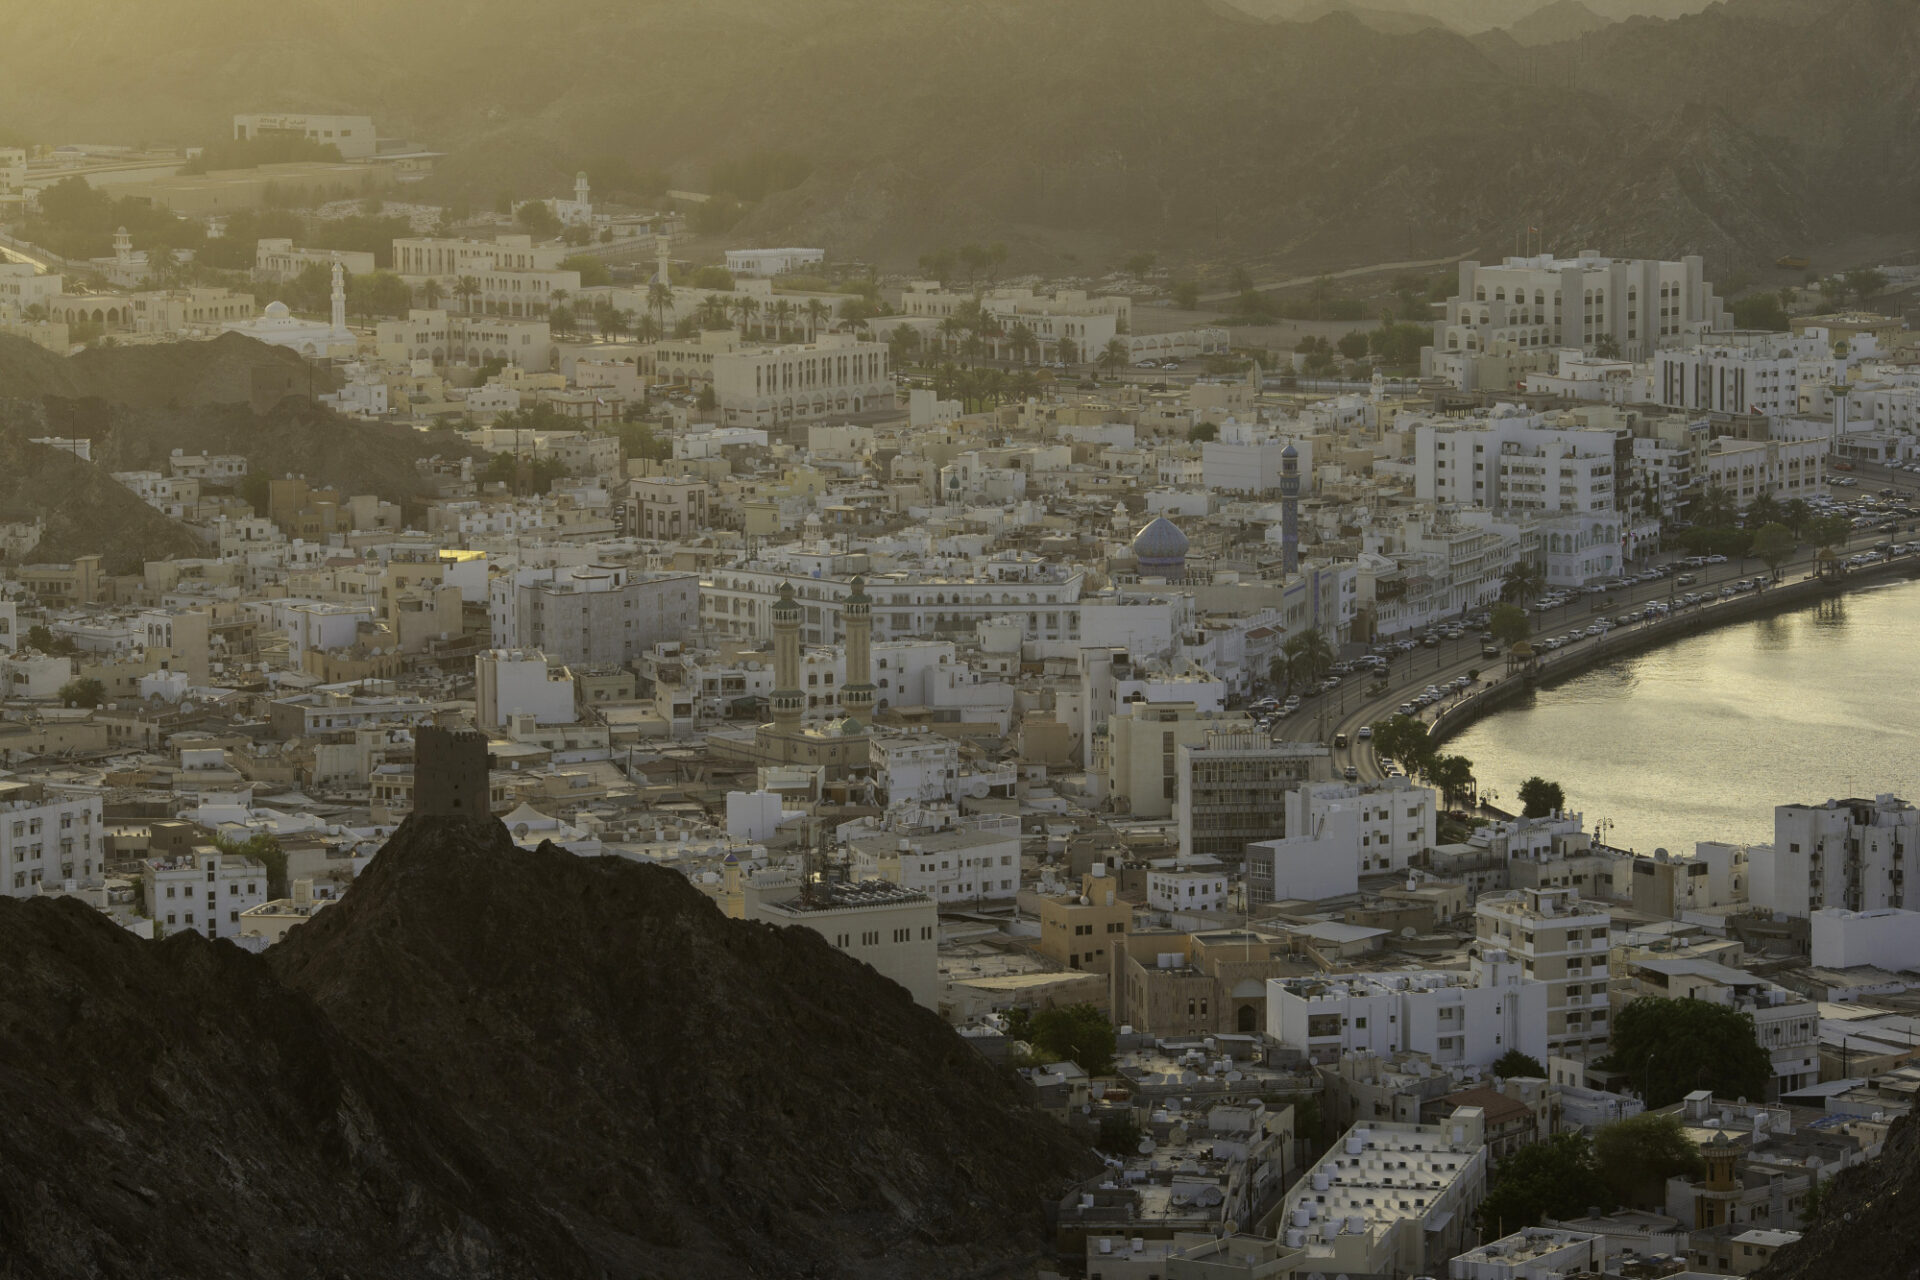 رفعت وكالة ستاندرد آند بورز تصنيفها الائتماني السيادي طويل الأجل للعملة الأجنبية والمحلية لسلطنة عمان إلى BB+